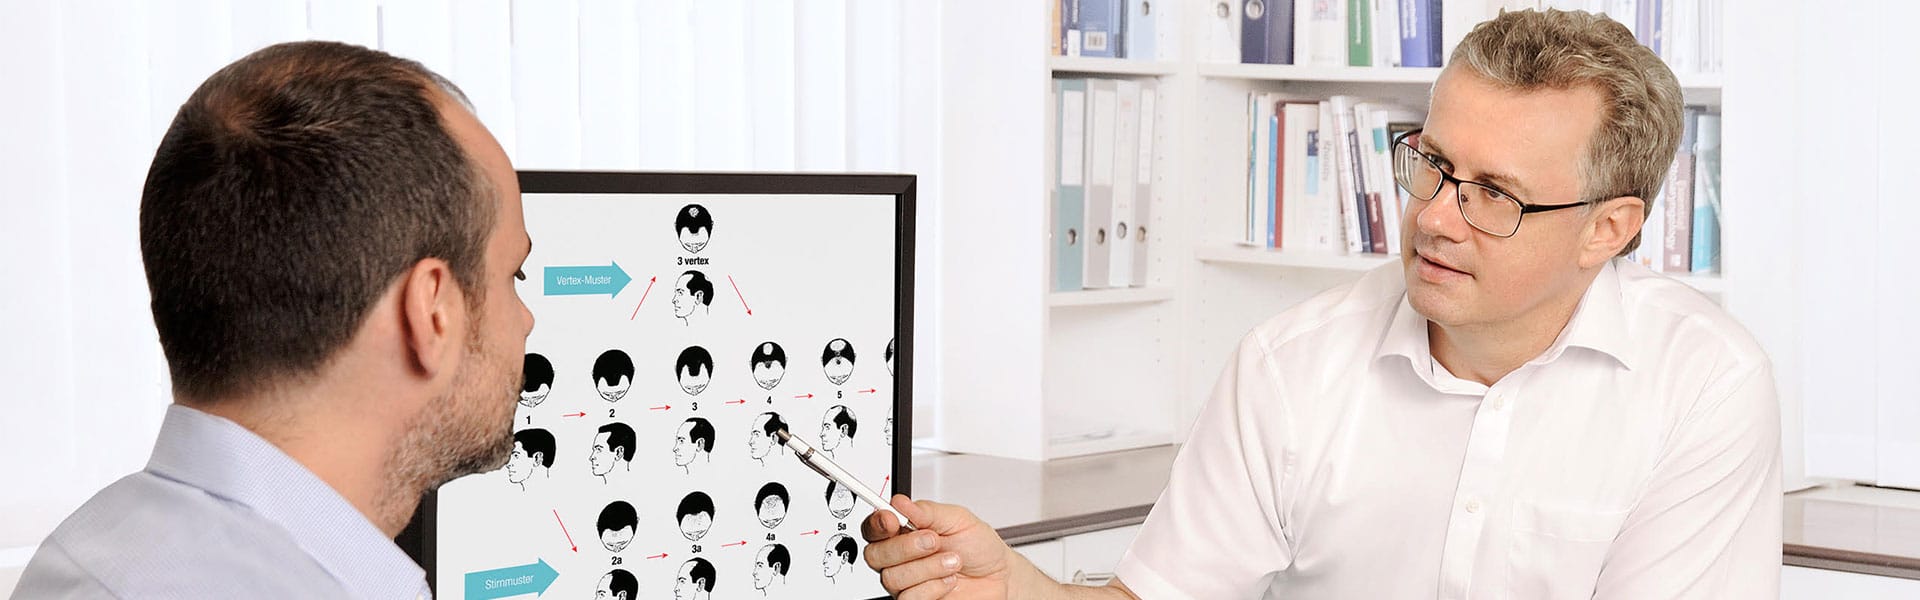 Dr. Med. Domeisen Berät Einen Patienten Mit Haarausfall Am Hinterkopf Am Computer Mit Anschauungsbildern